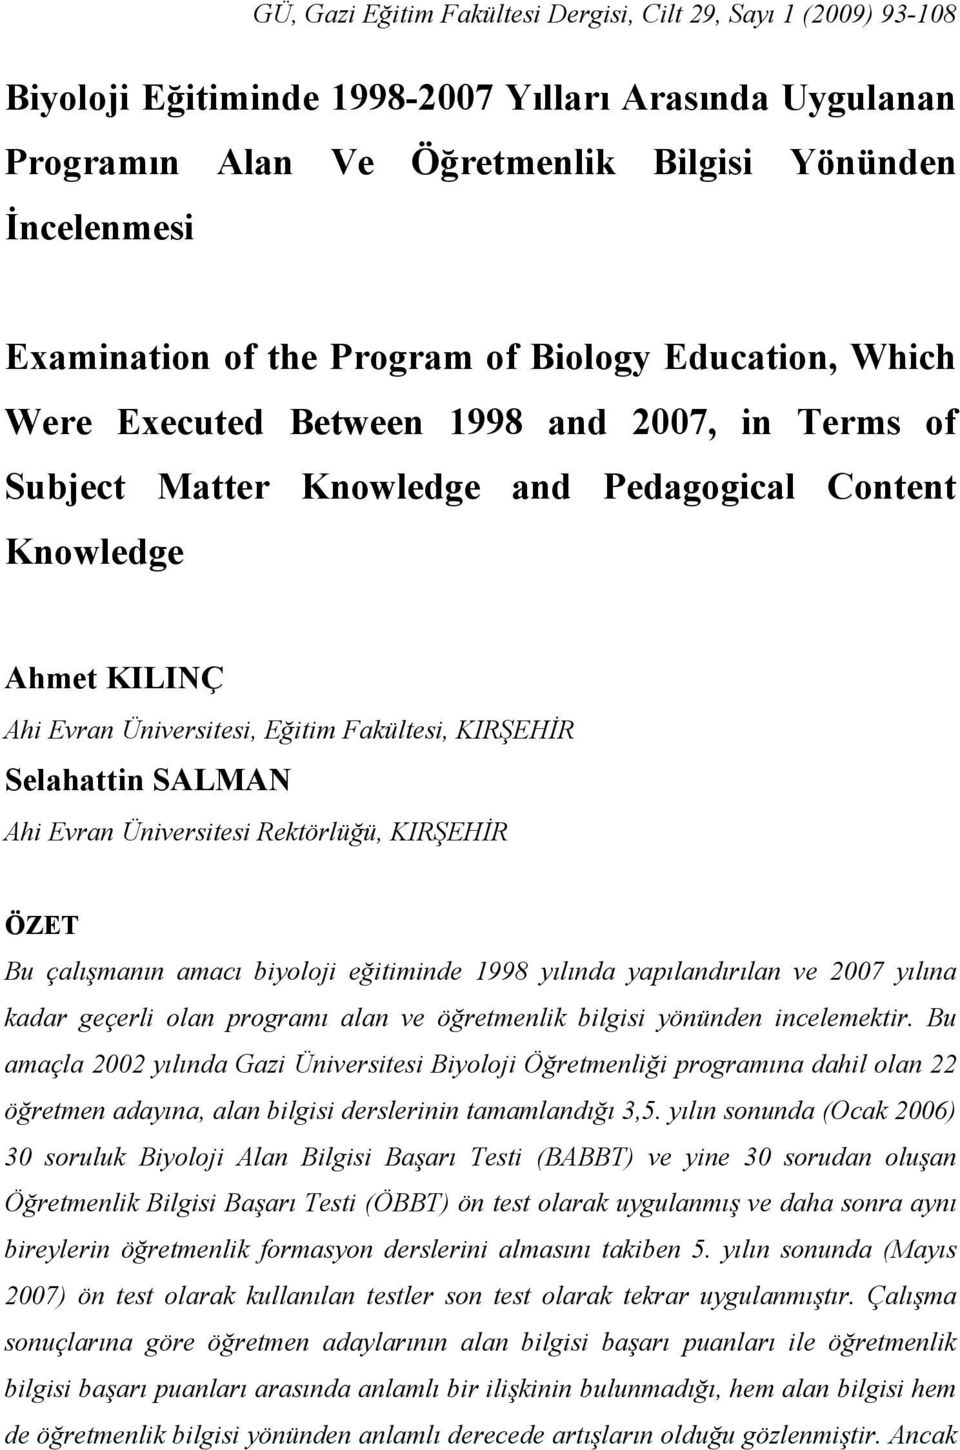 KIRŞEHİR Selahattin SALMAN Ahi Evran Üniversitesi Rektörlüğü, KIRŞEHİR ÖZET Bu çalışmanın amacı biyoloji eğitiminde 1998 yılında yapılandırılan ve 2007 yılına kadar geçerli olan programı alan ve